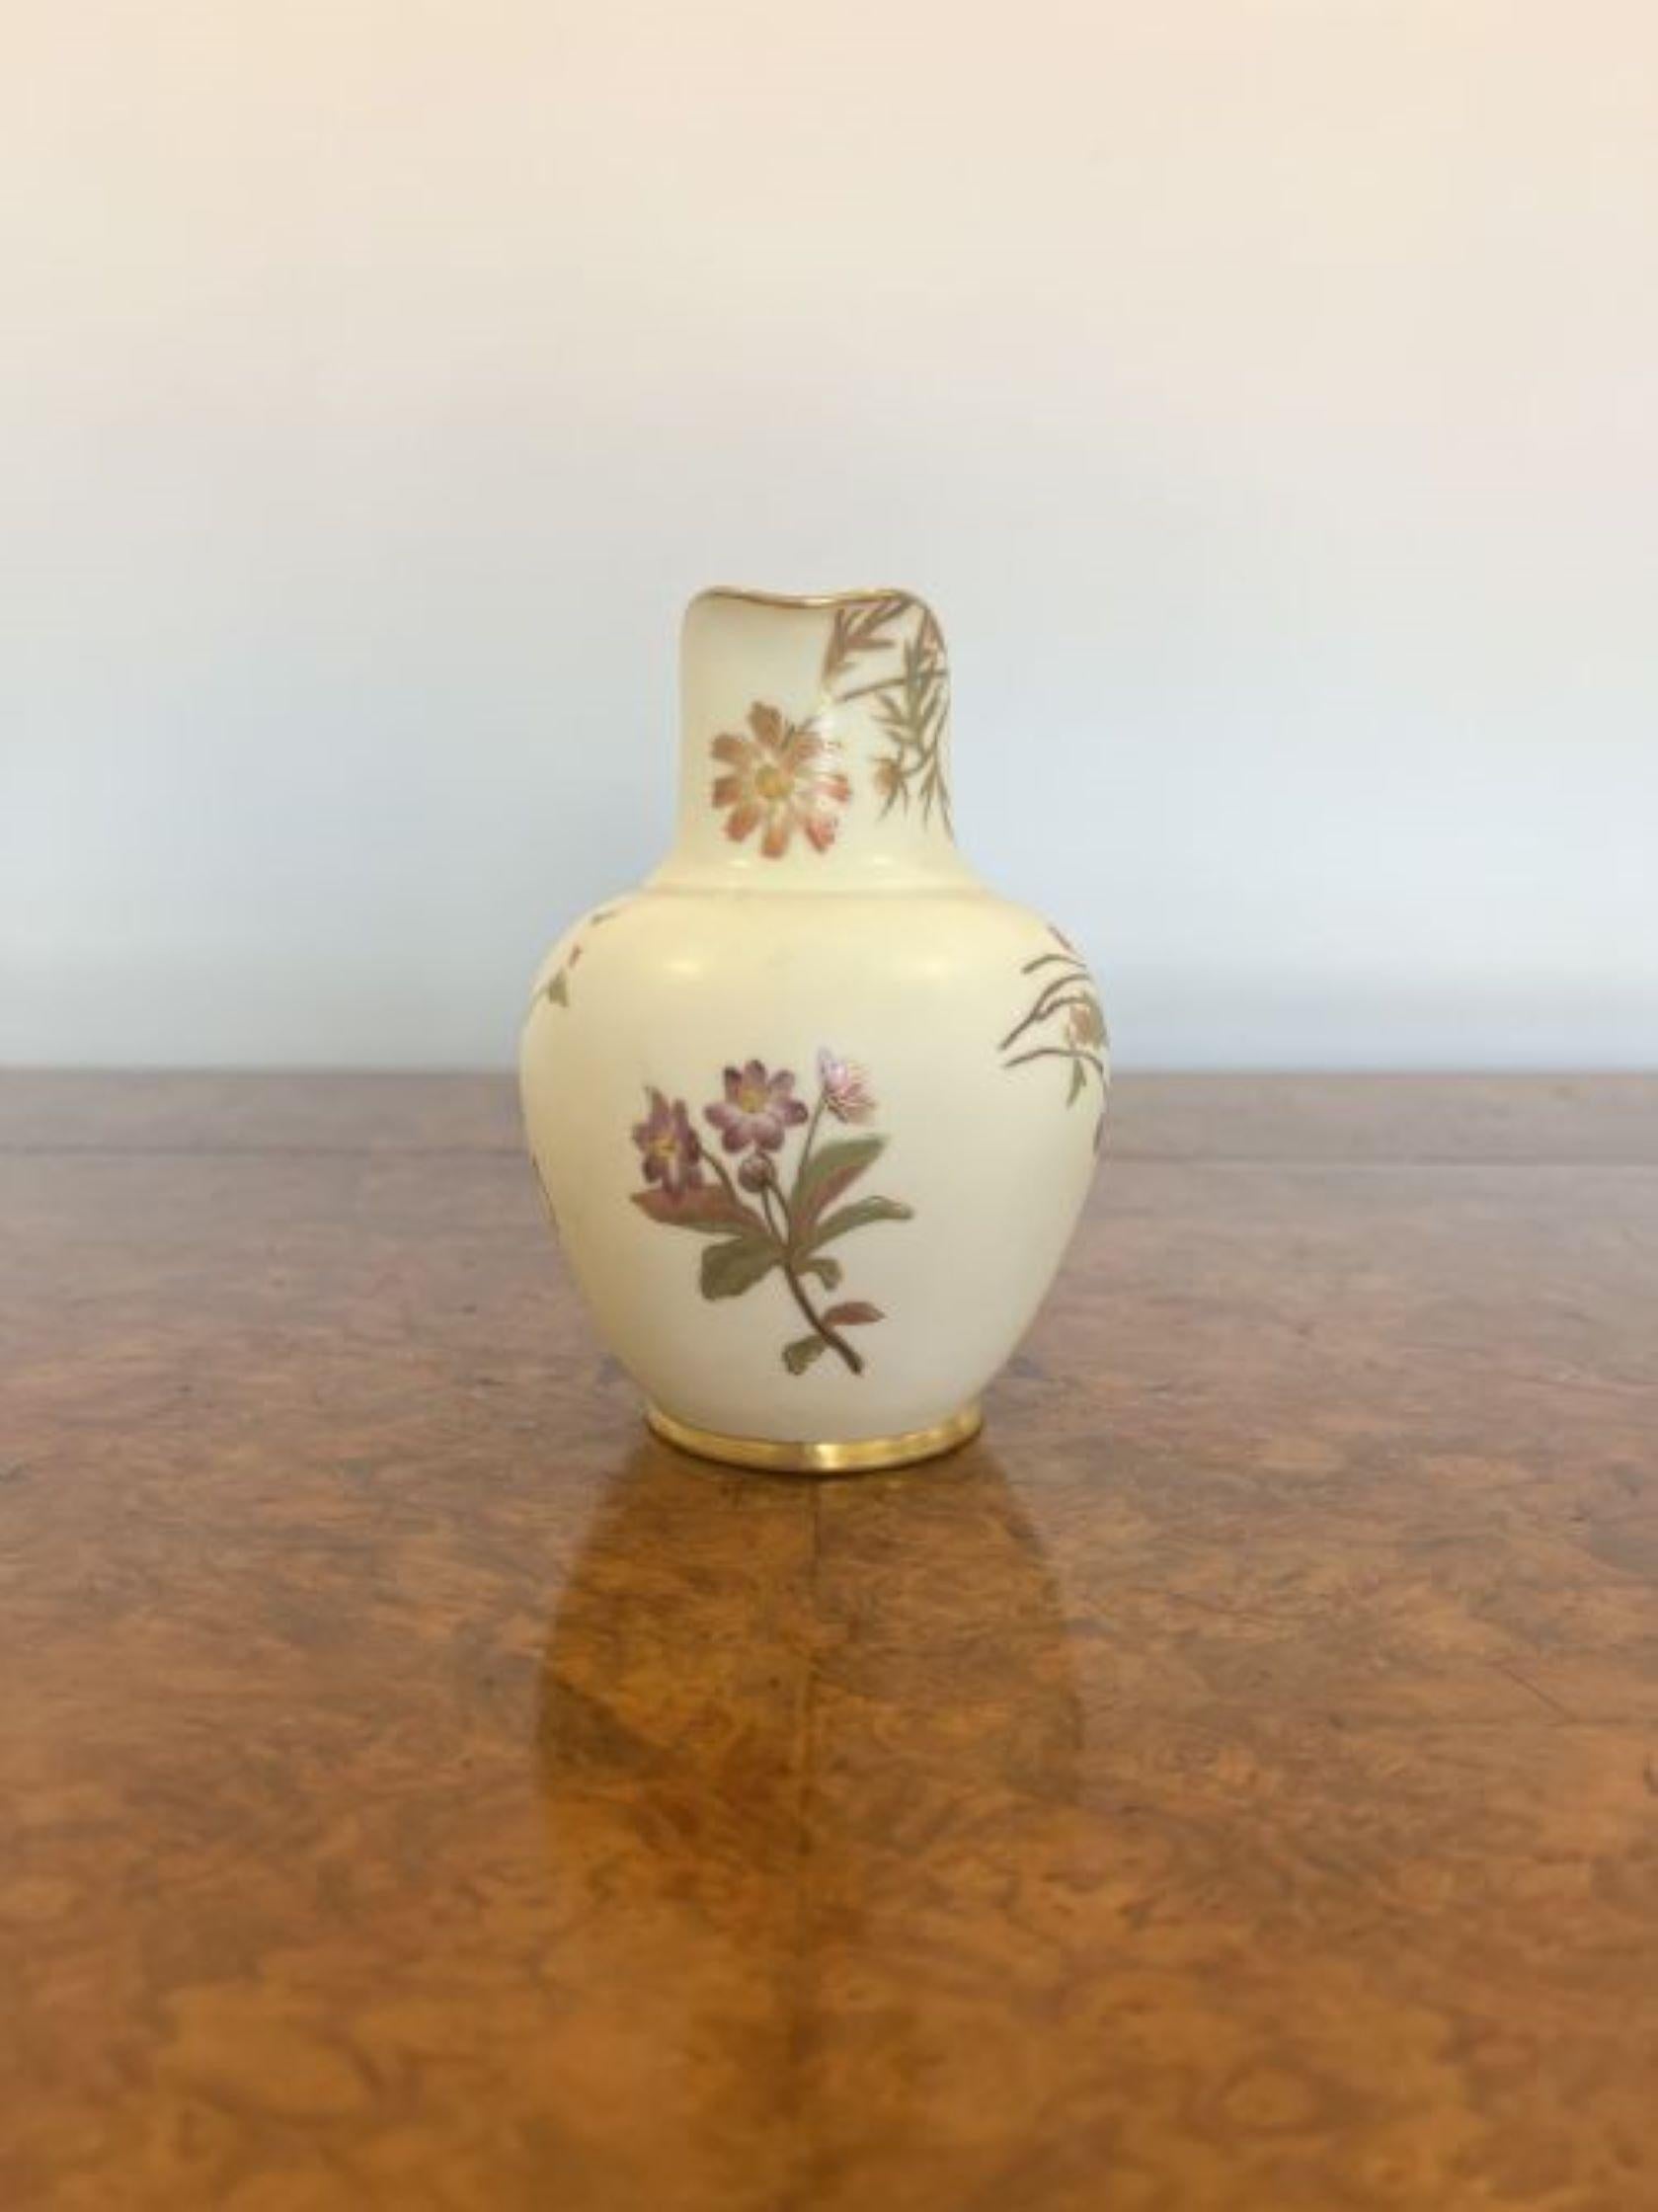 Ceramic Quality antique Royal Worcester jug For Sale